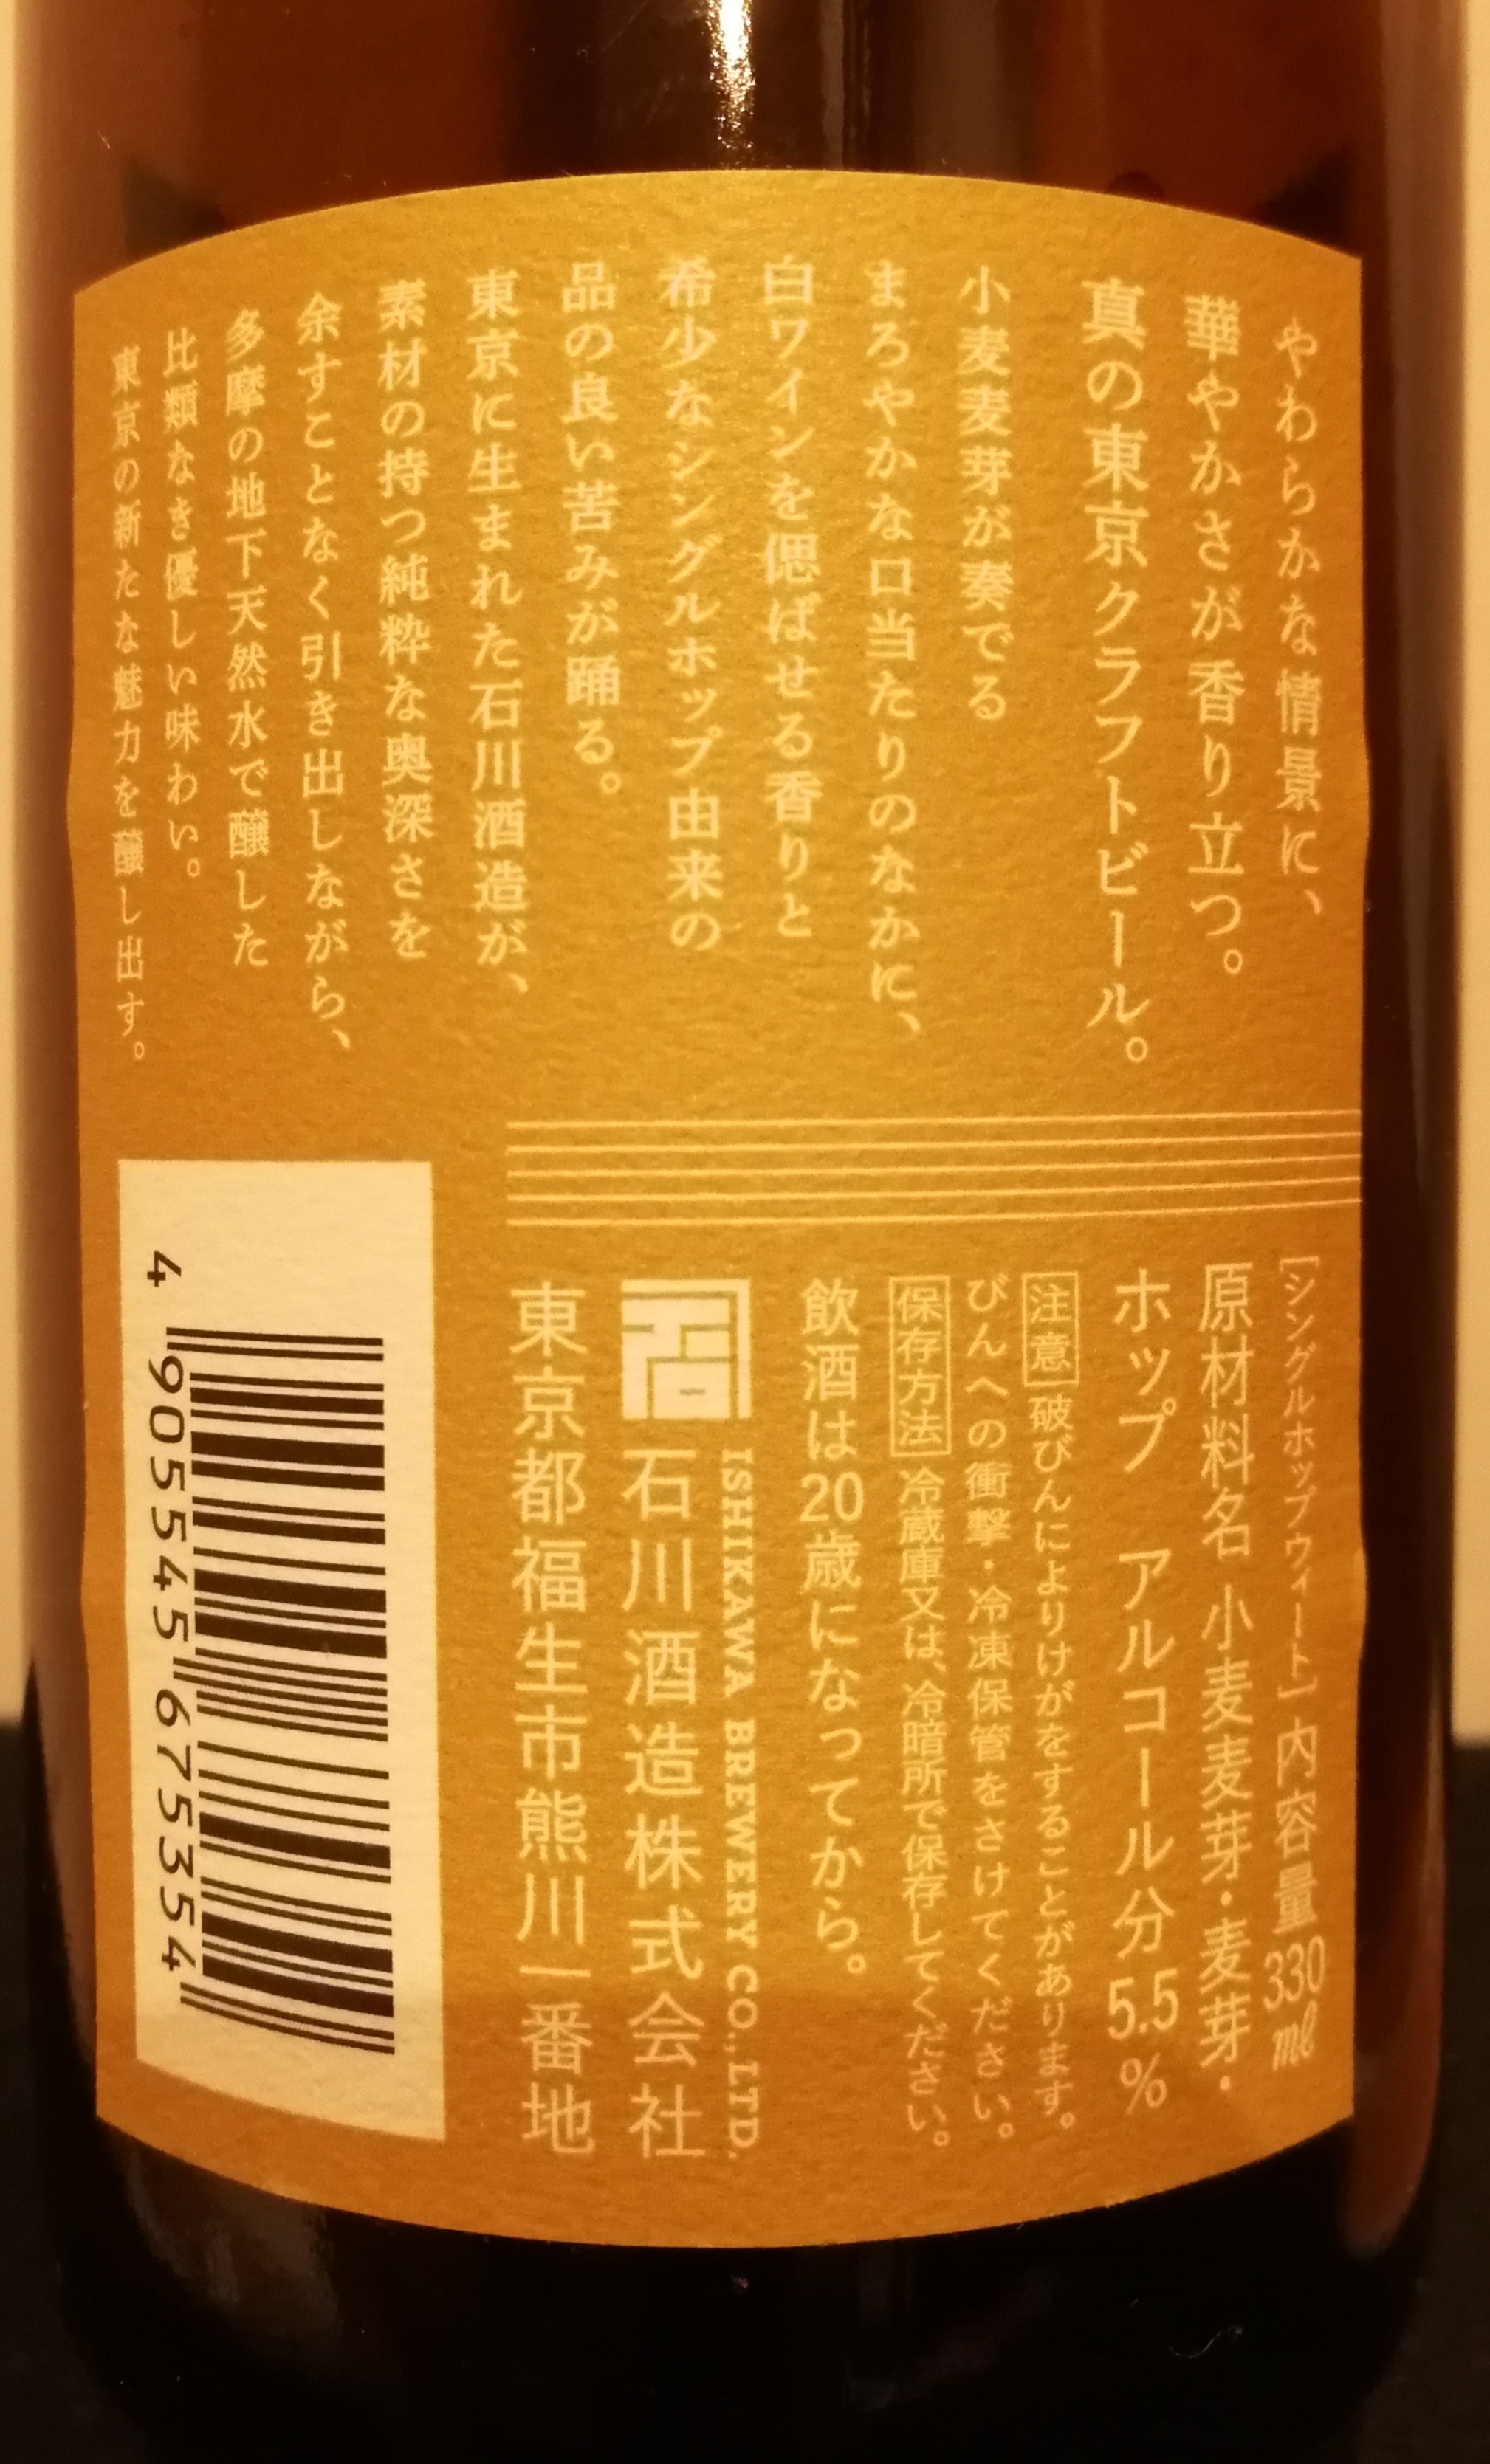 東京 石川酒造株式会社　TOKYOBLUES SINGLE HOP WHEAT